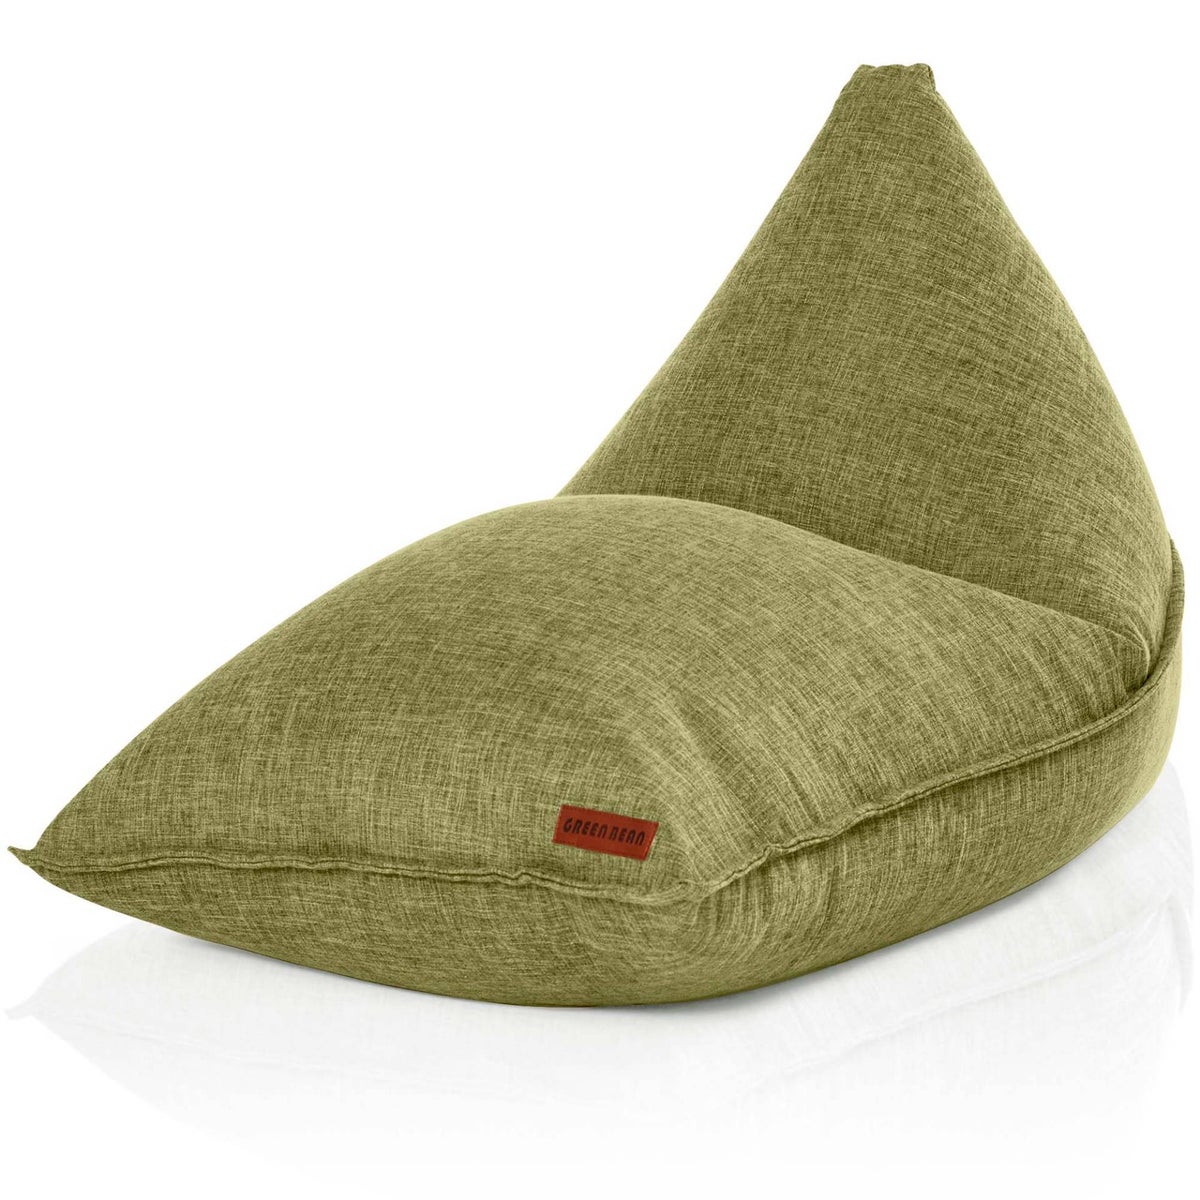 Green Bean© Sitzsack Triangle 150x100x100cm mit 220 Liter EPS-Perlen Füllung - Kuschelig Weich Waschbar - Drinnen Stoff Bodenkissen Liegekissen Sitzkissen - Grün